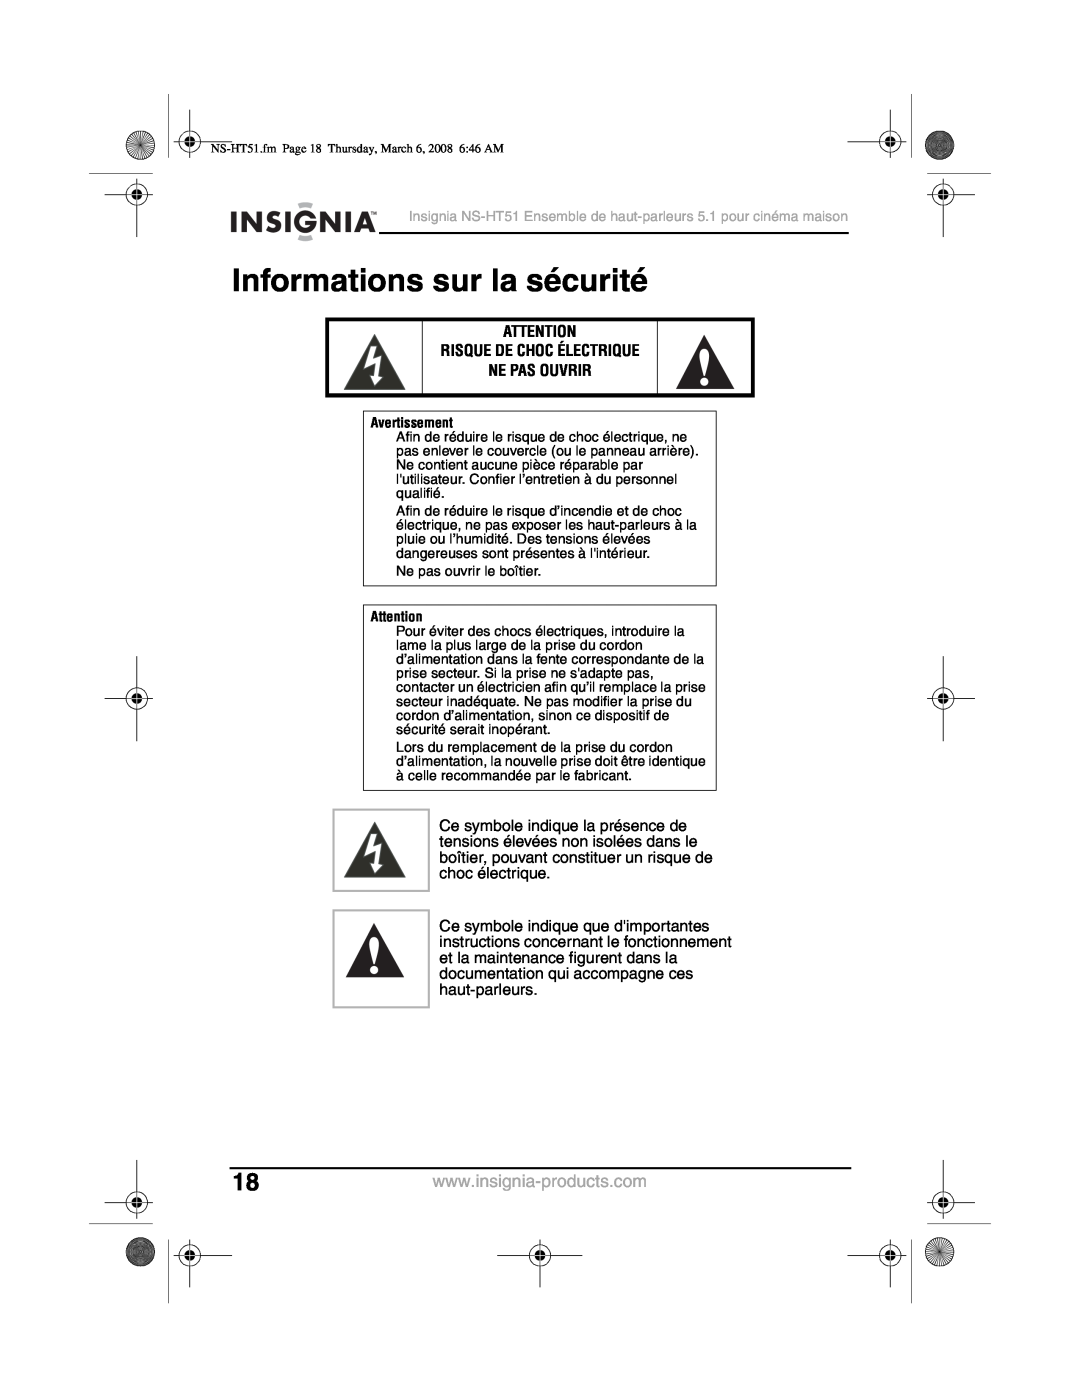 Insignia NS-HT51 manual Informations sur la sécurité, Risque De Choc Électrique Ne Pas Ouvrir 